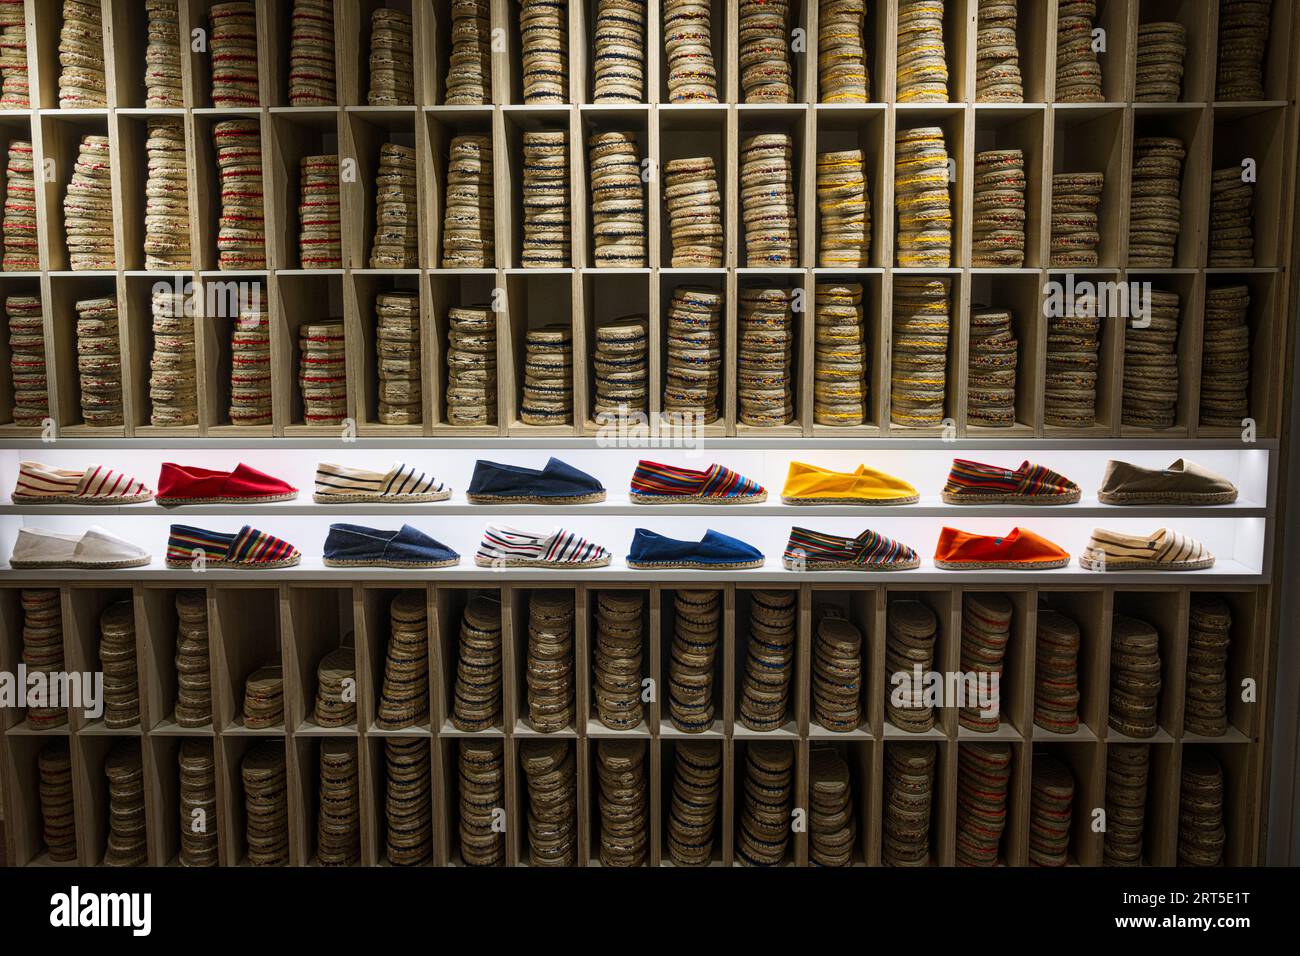 Chaussures espadrilles en vente dans la ville basque poivrée d'Espelete, France Banque D'Images